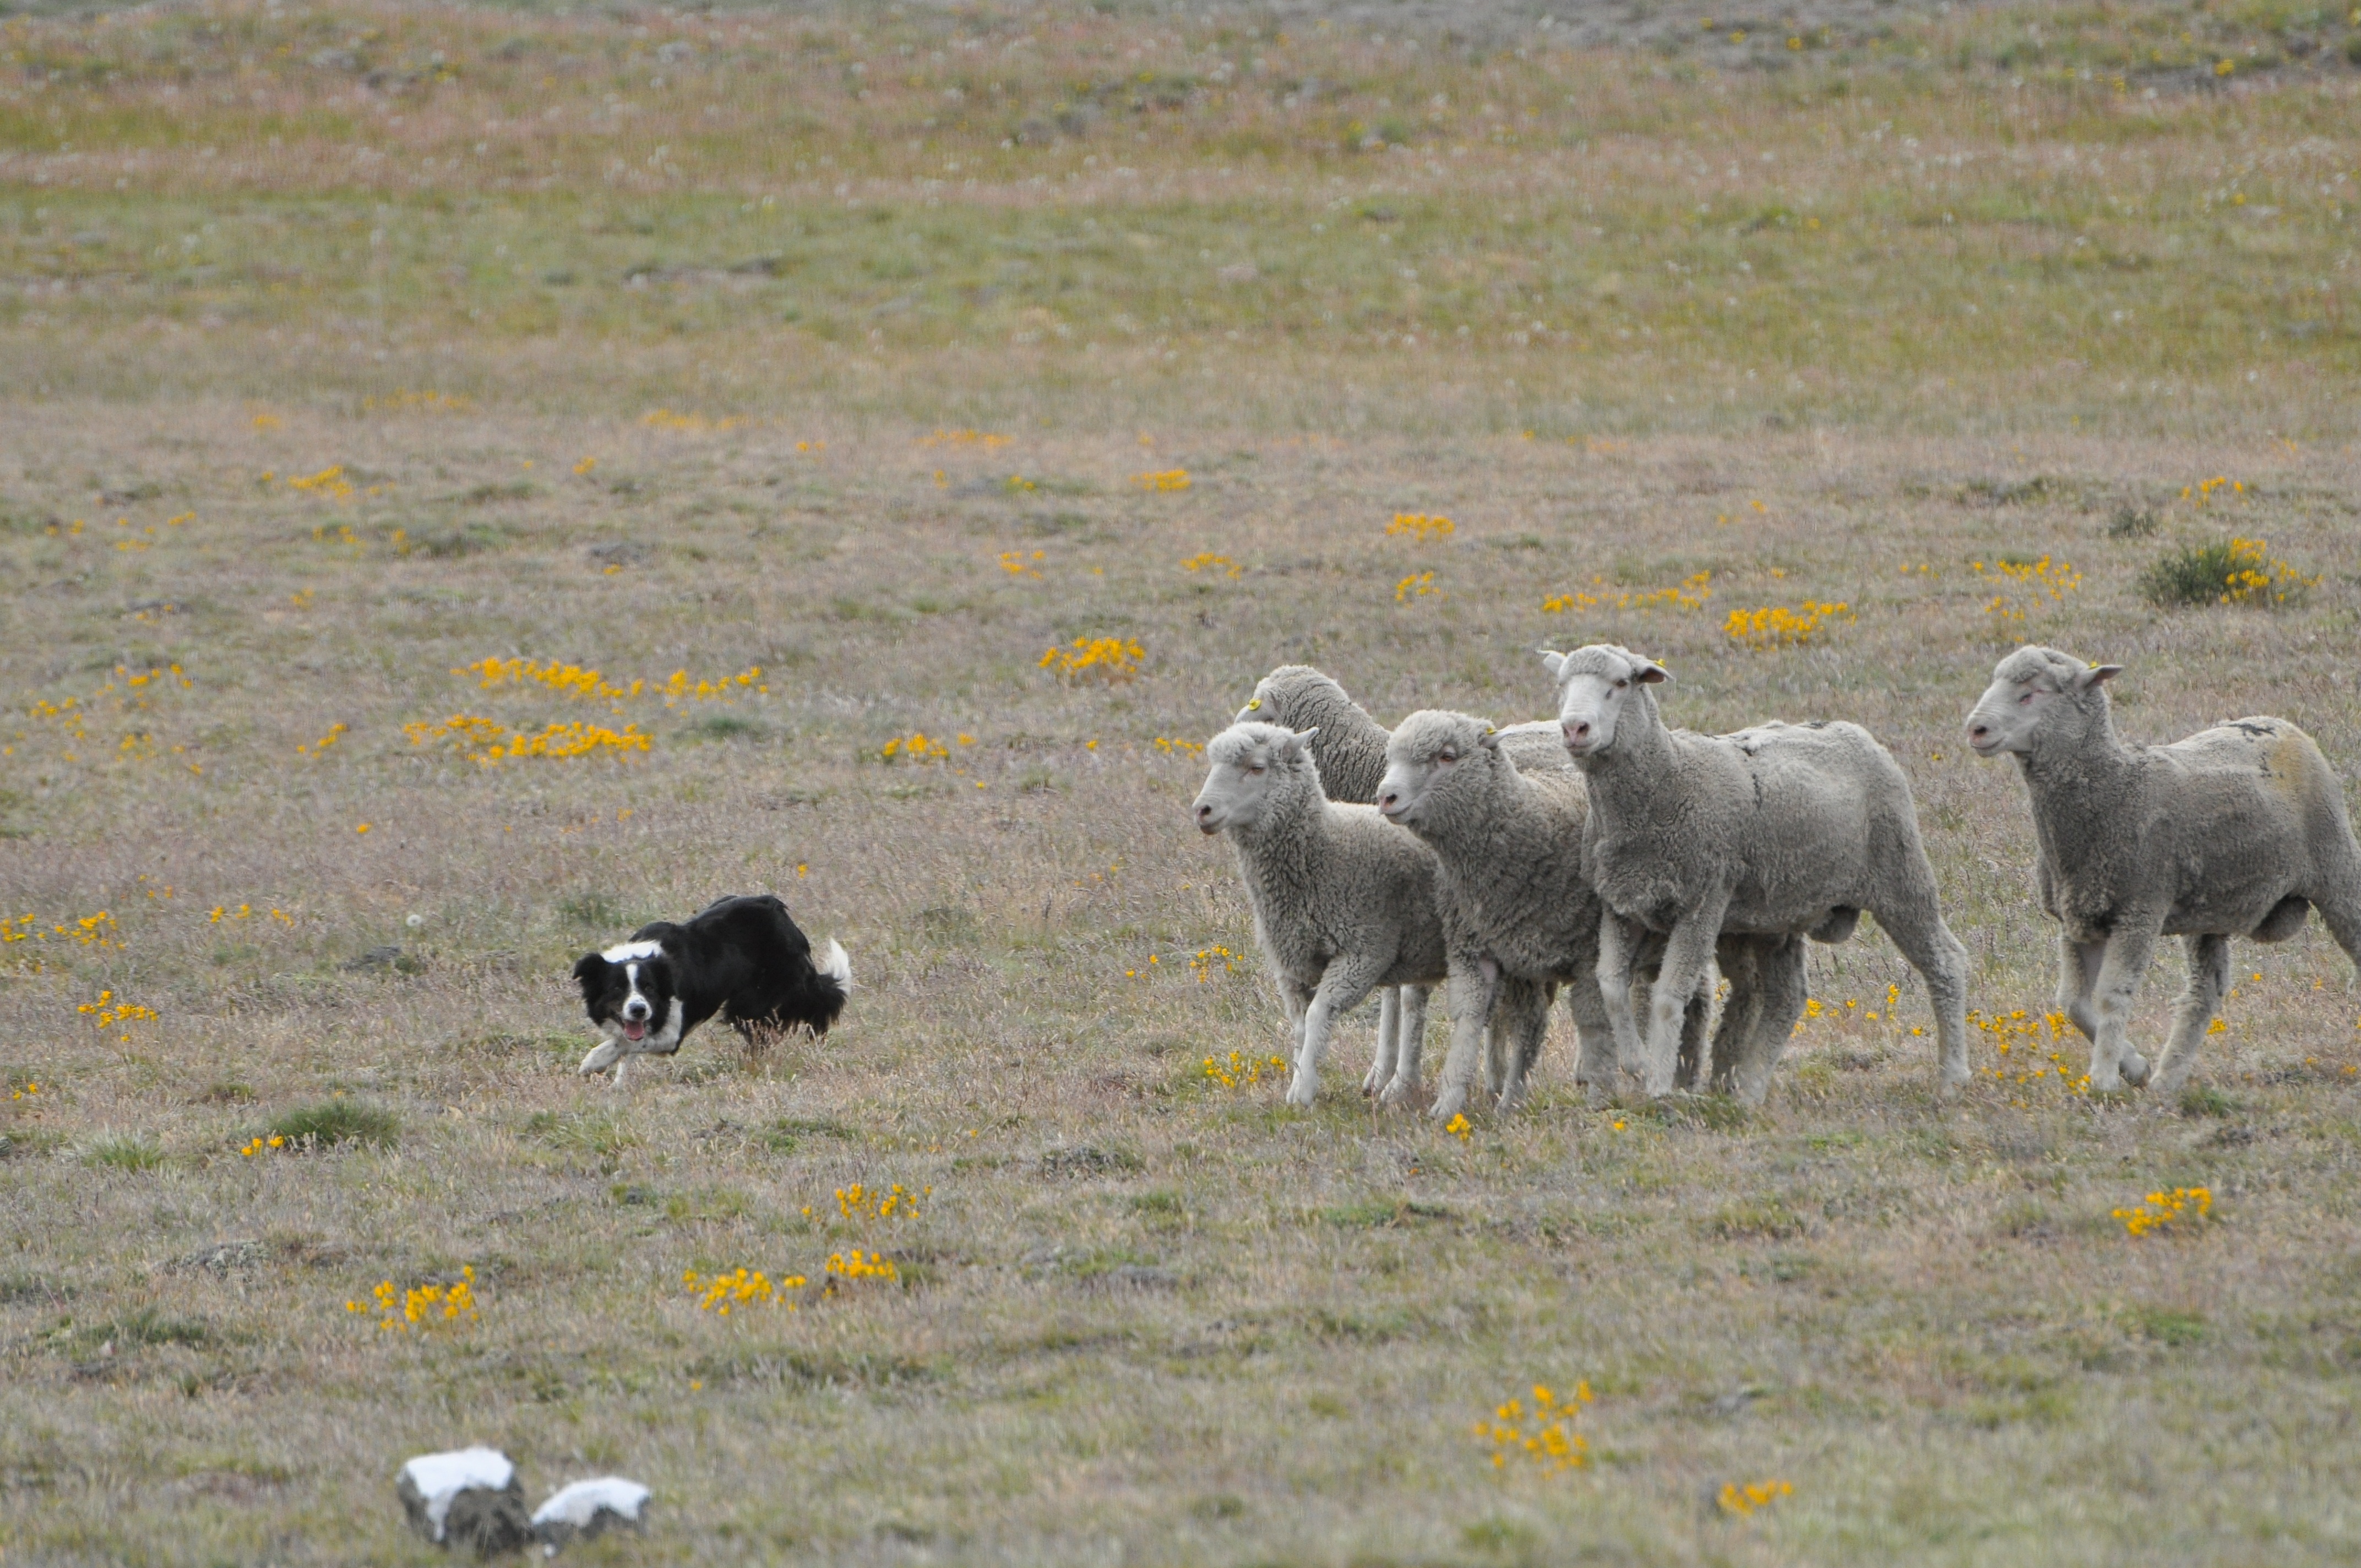 Trabajando con un pequeño grupo de ovejas, observamos la tipica posición de trabajo del Border Collie